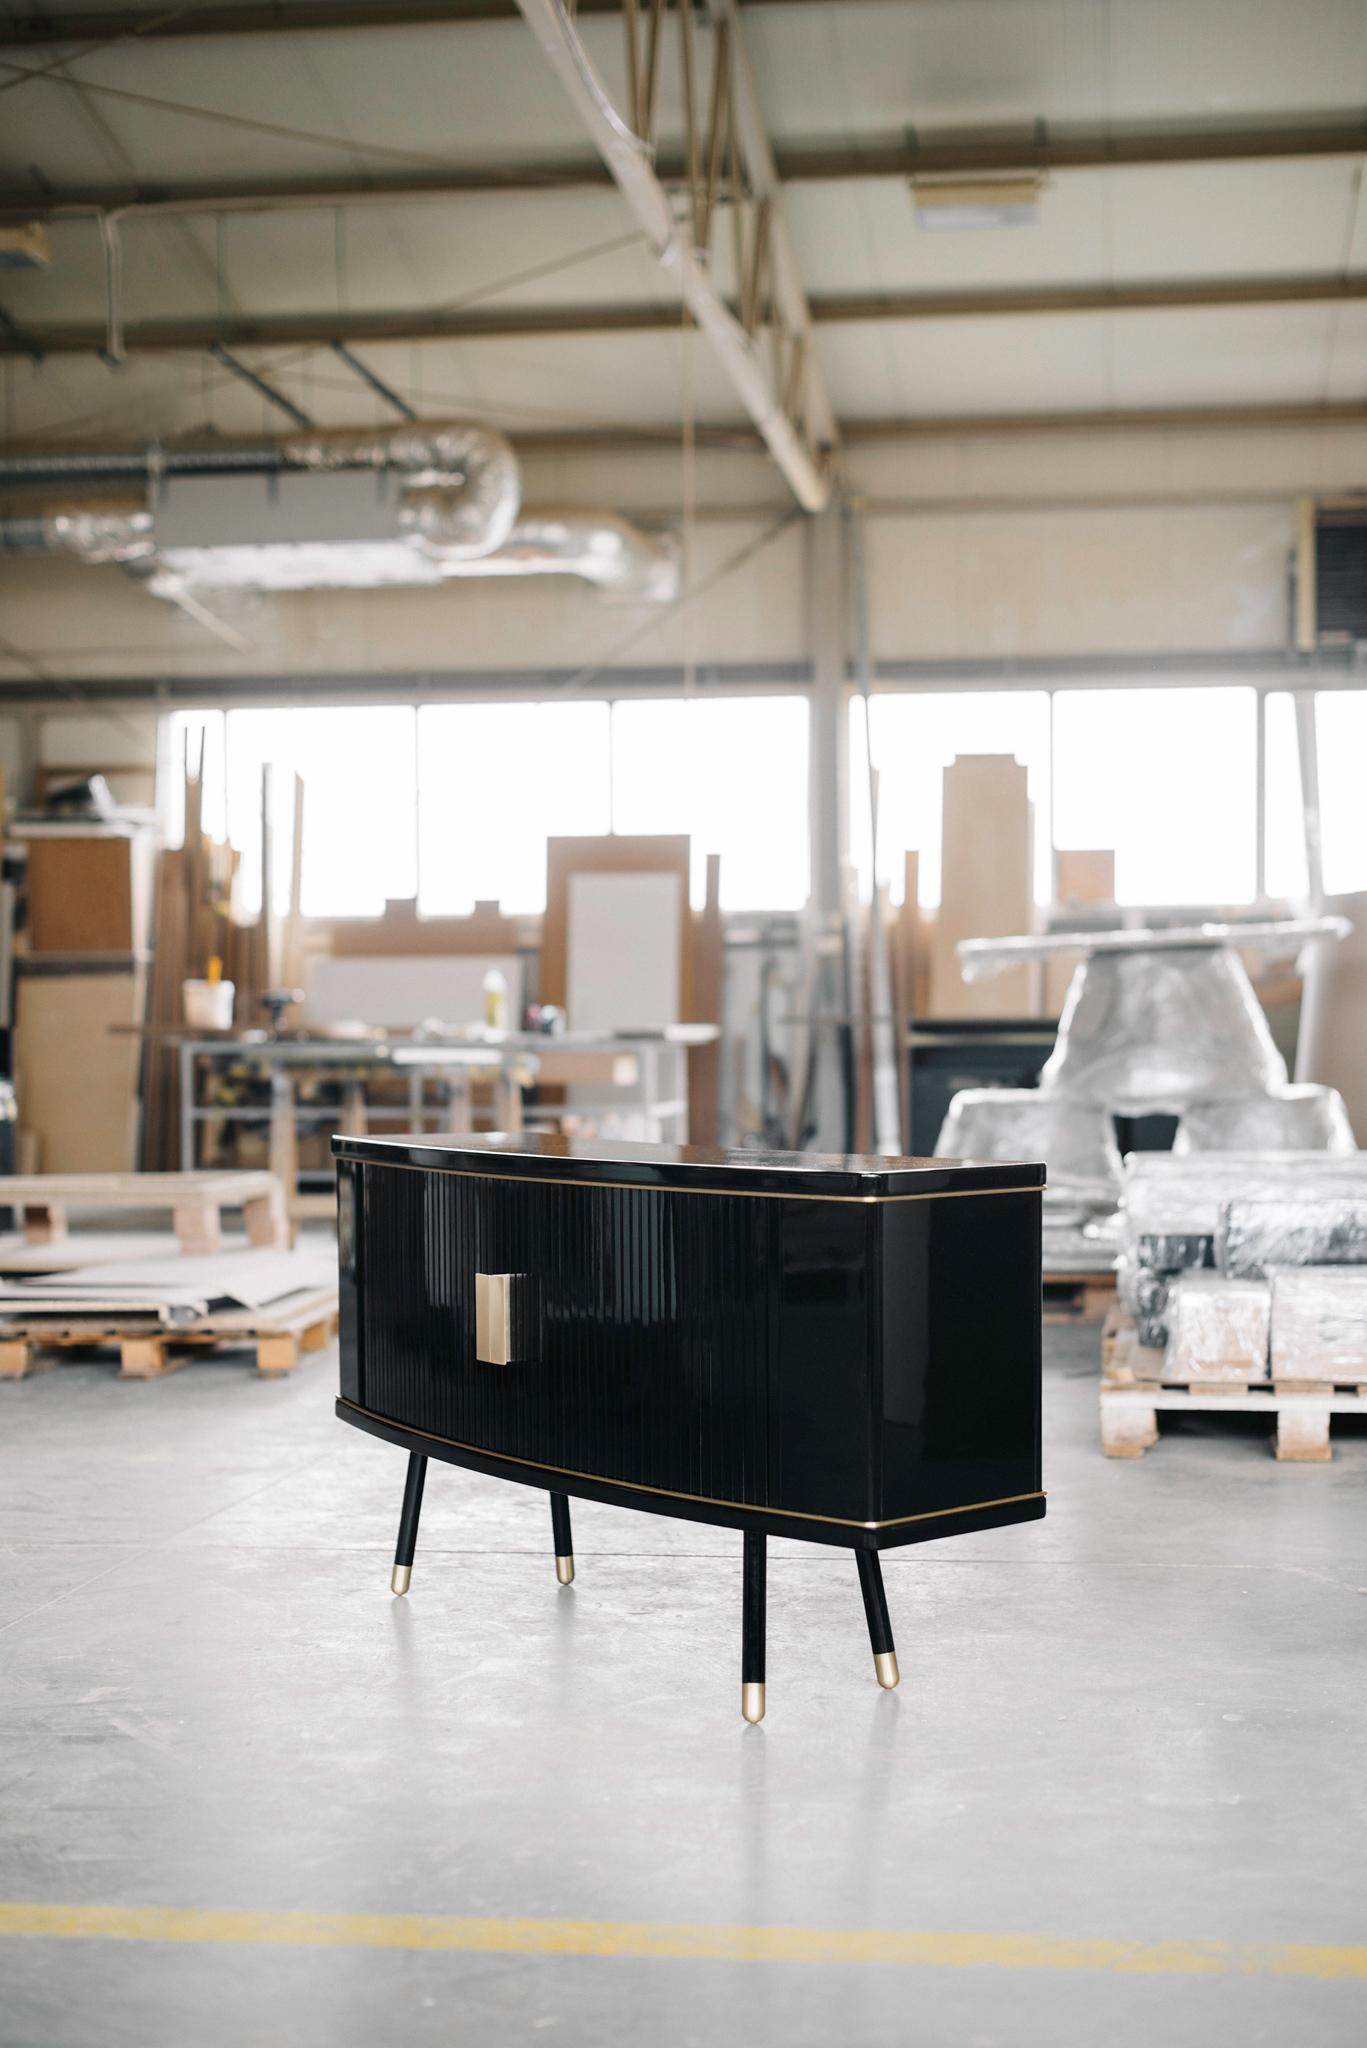 Bespoke cabinet by Magdalena Tekieli
Dimensions: L 150 x D 50 x H 70 cm
Materials: Brass, metal, oak, piano black gloss finish.

.